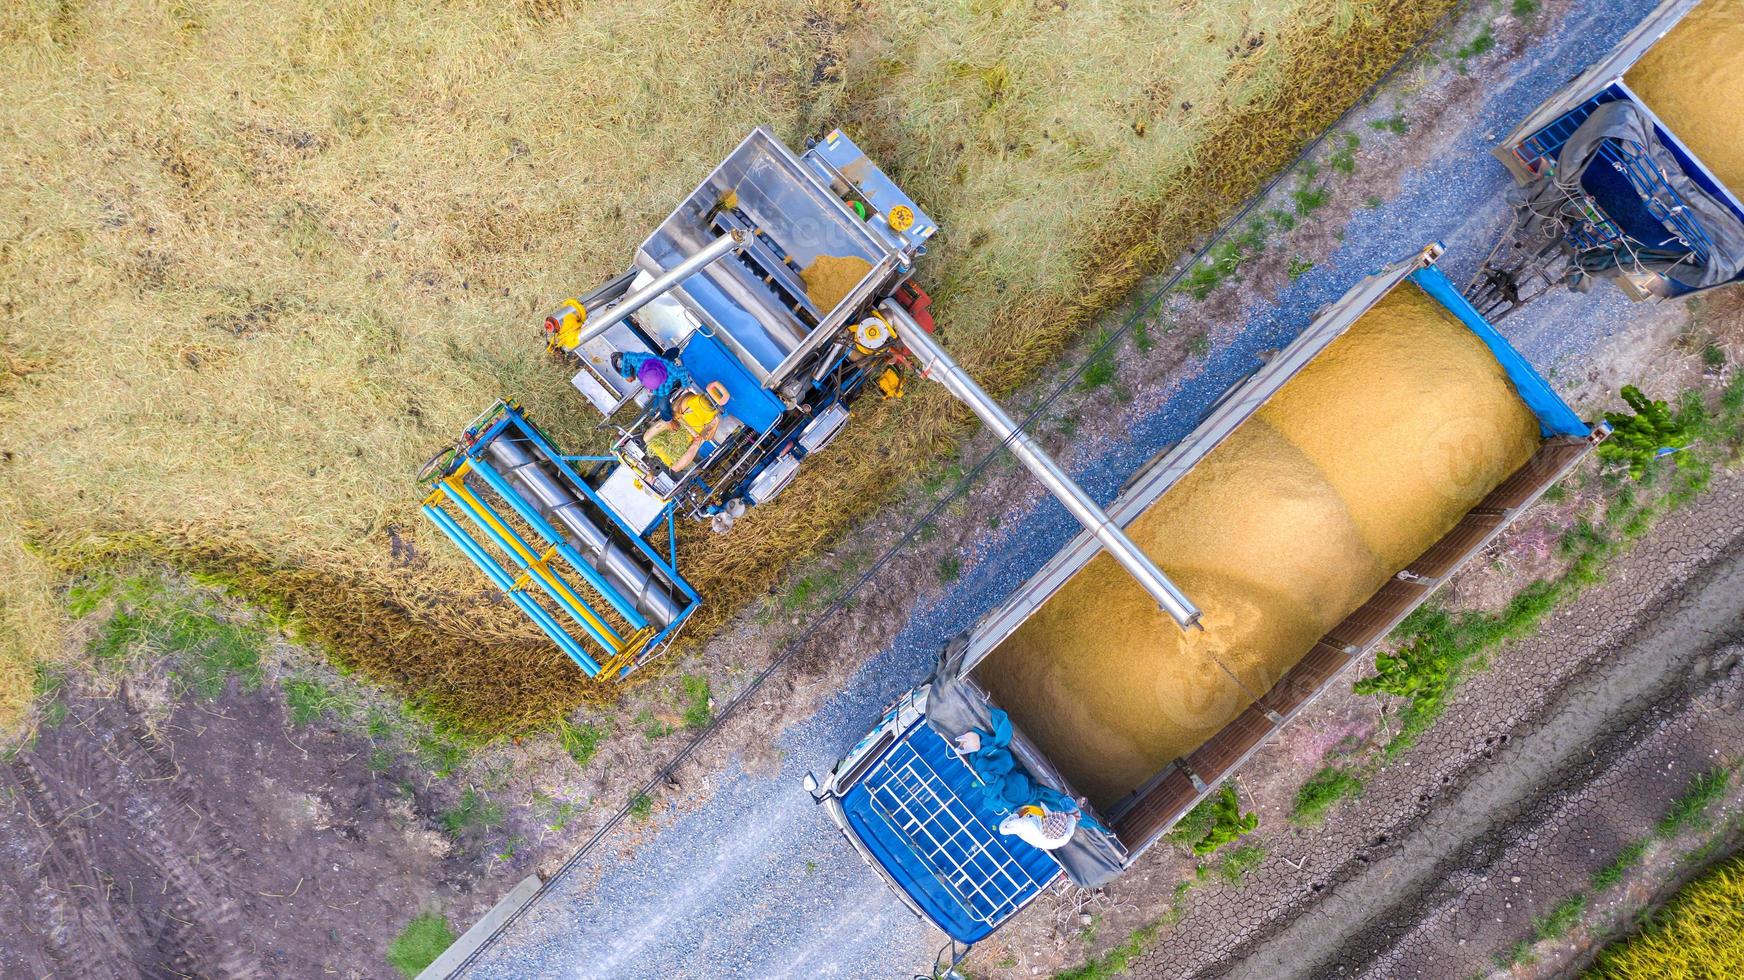 vue aérienne de dessus de la machine de récolte et du camion travaillant dans une rizière, vue d'en haut photo